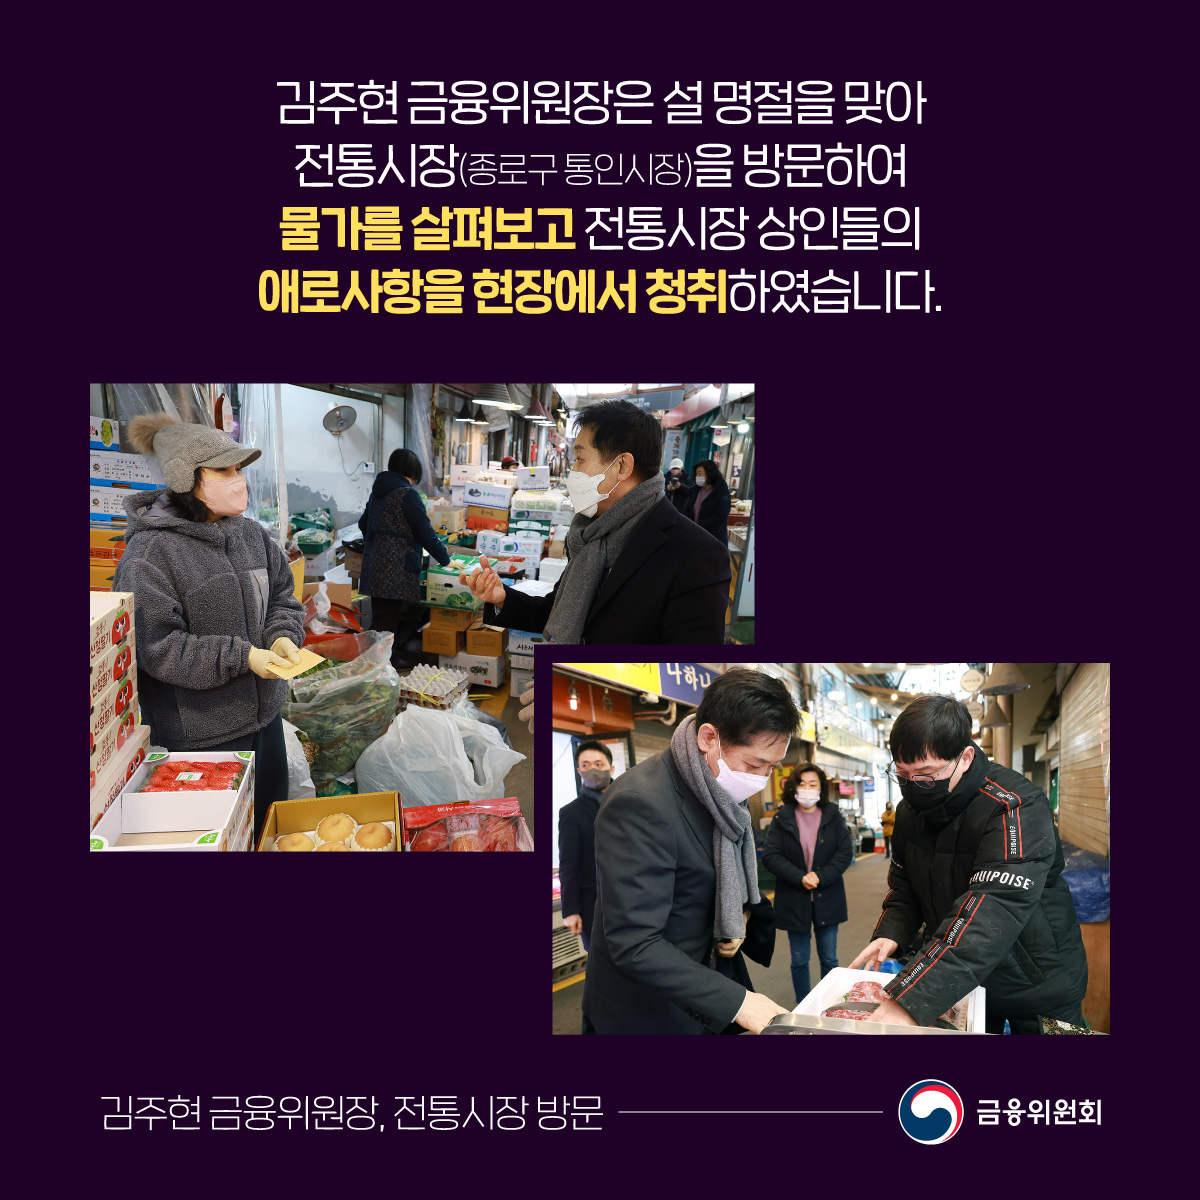 김주현 금융위원장은 설 명절을 맞아 전통시장(종로구 통인시장)을 방문하여 물가를 살펴보고 전통시장 상인들의 애로사항을 현장에서 청취하였습니다.